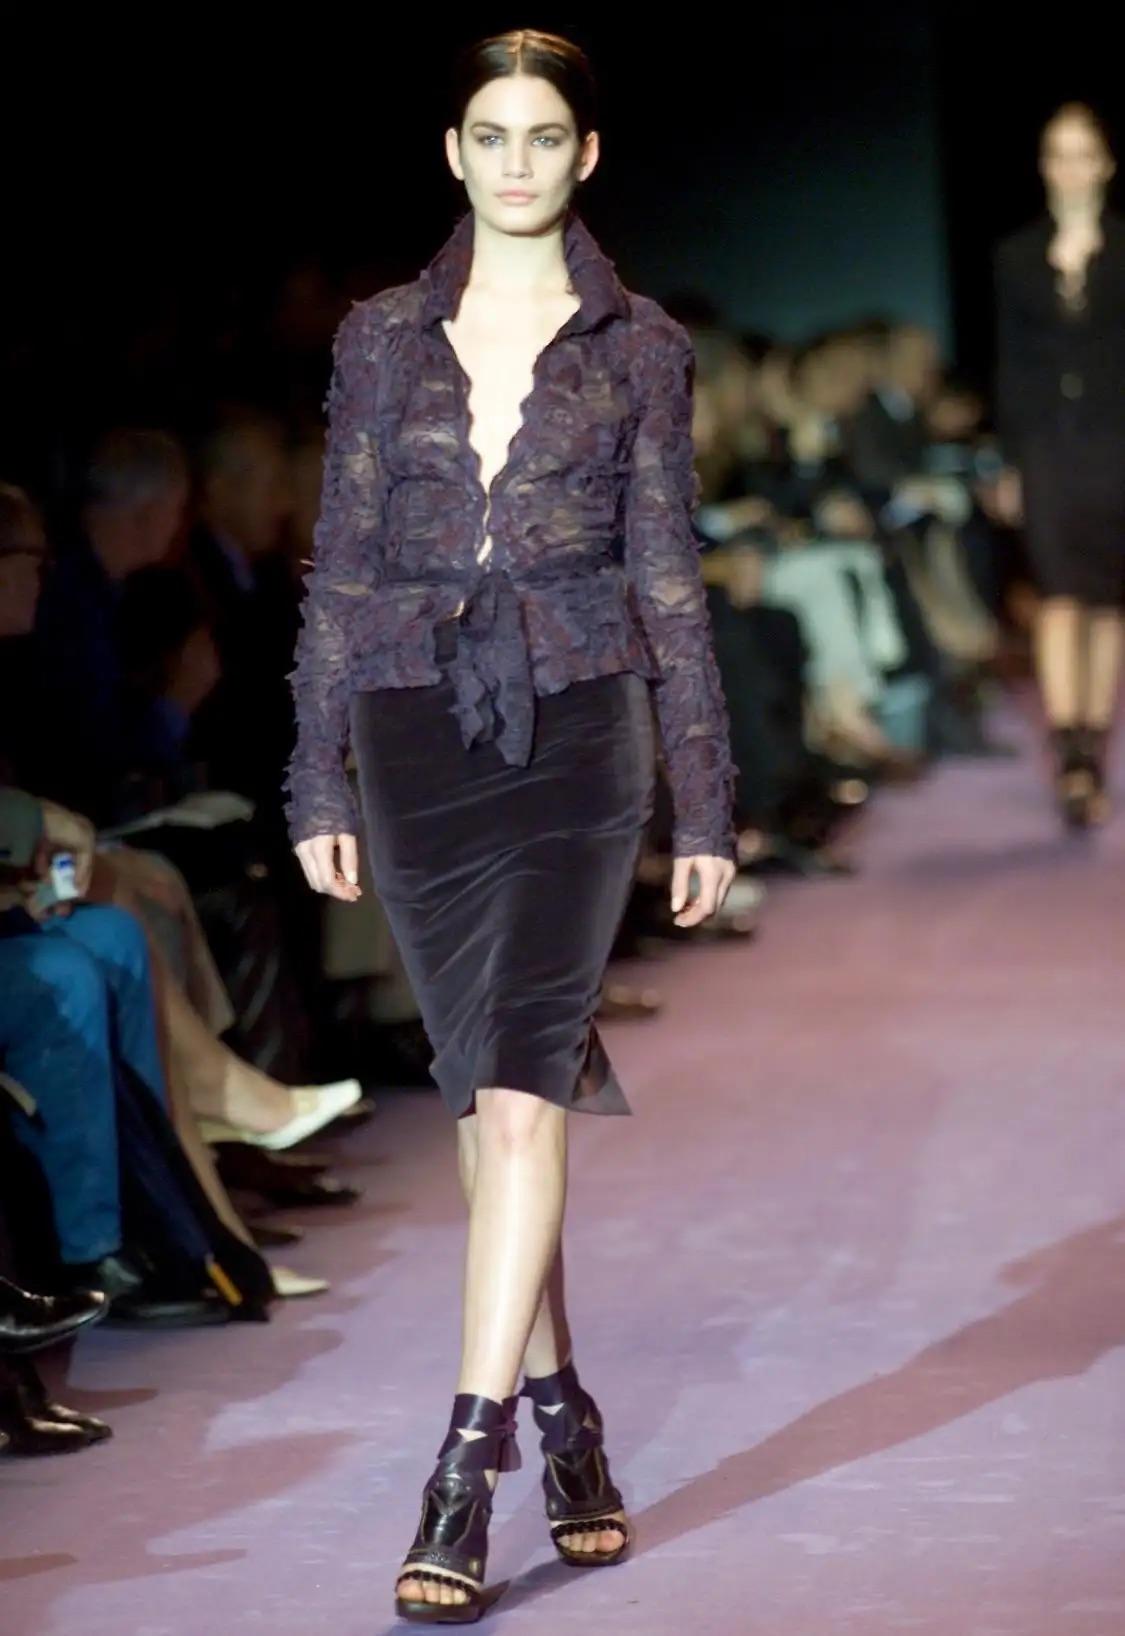 Wir präsentieren eine Bluse aus durchsichtiger, bestickter Blumenspitze, die Tom Ford für die Herbst/Winter-Kollektion 2001 von Yves Saint Laurent Rive Gauche entworfen hat. Dieses Kleidungsstück, das bei der Laufstegpräsentation der Saison an Vicky